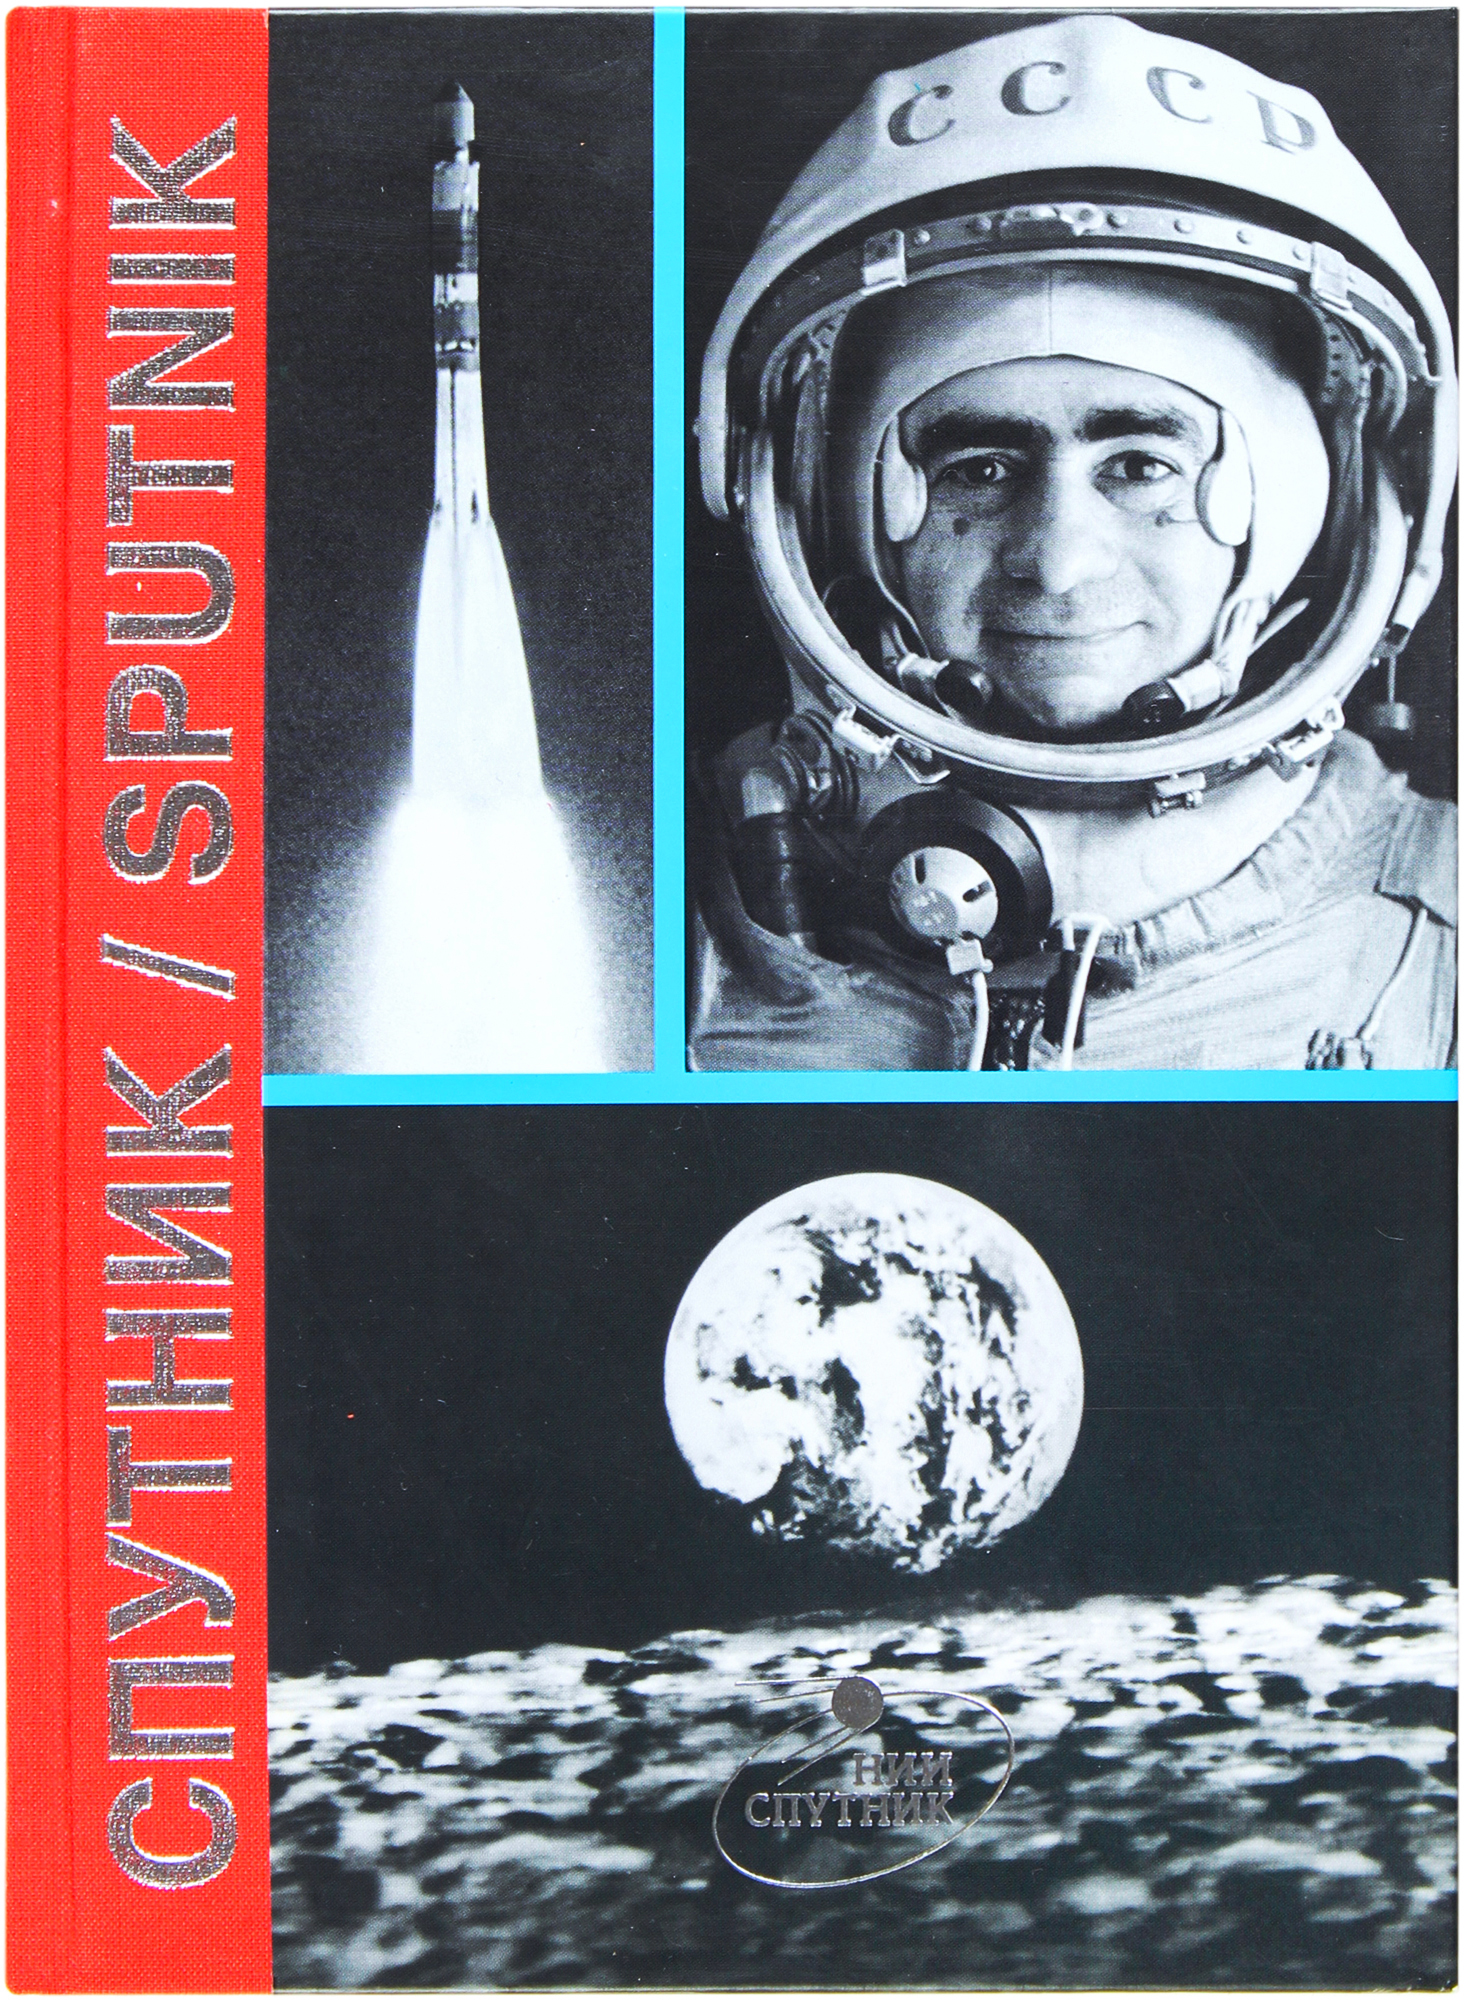 Che cosa successe nella missione spaziale sovietica Soyuz 2 del 1968? Ce lo svela un libro di Joan Fontcuberta